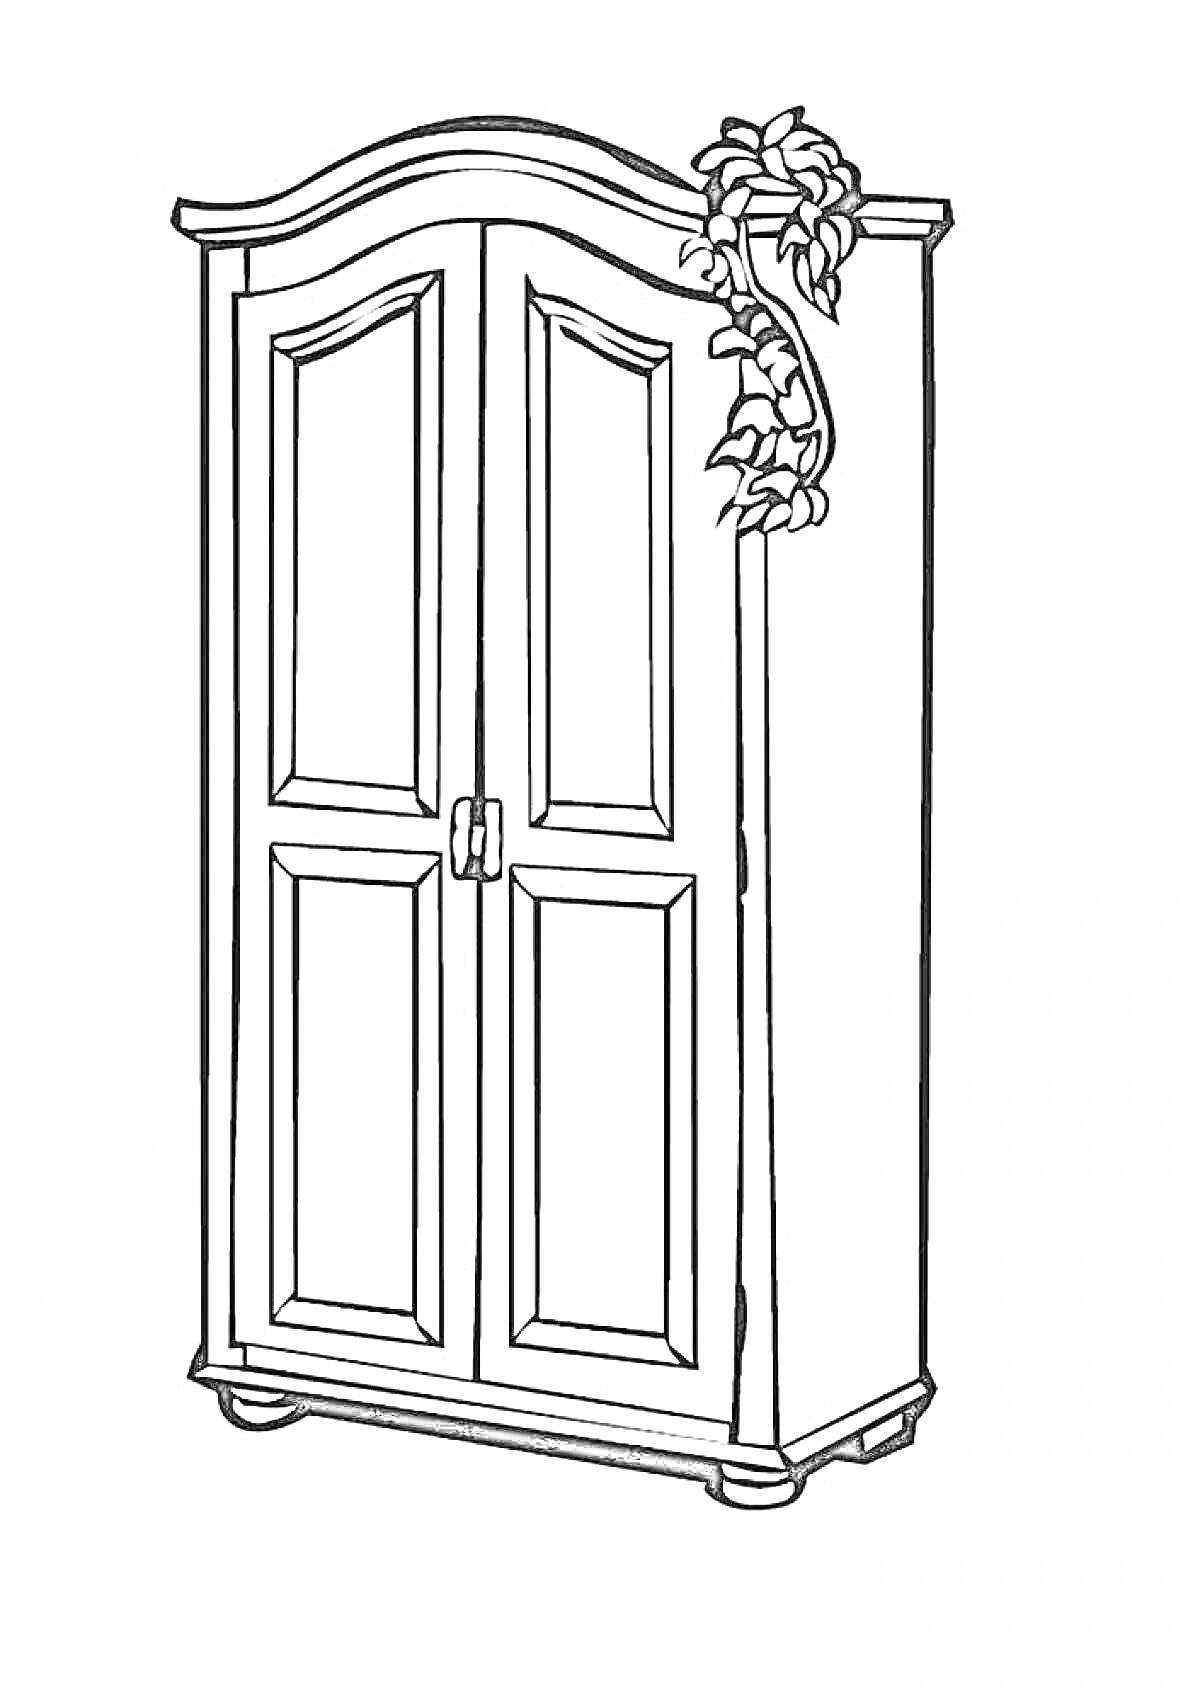 Шкаф с дверцами, украшенными резьбой, рядом с вьющимся растением